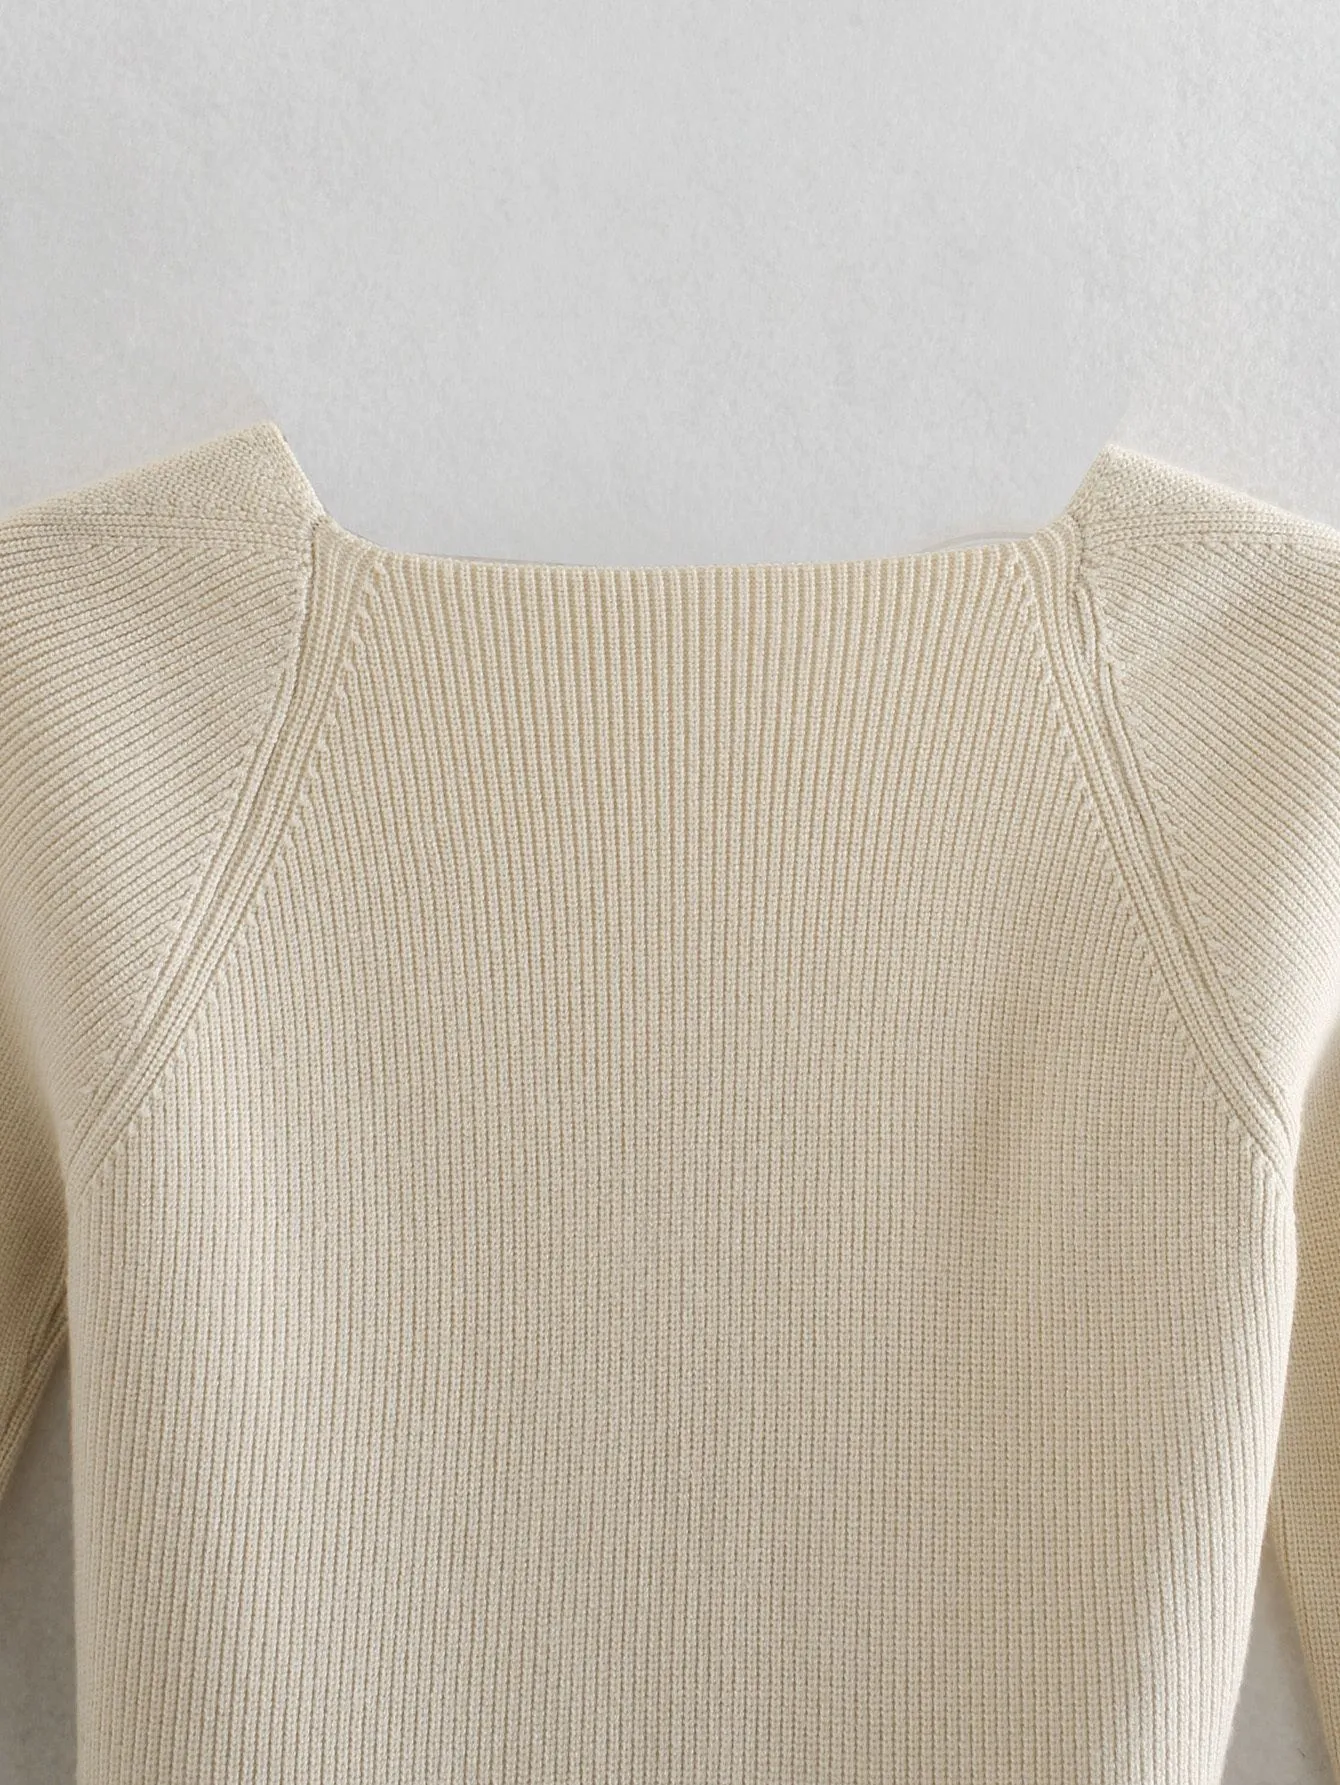 Pulls pour femmes 2021 Femmes Pull en tricot Top à manches longues Heart-Cou Casual Mode Femme Slim-Fit Tight Tops tricotés